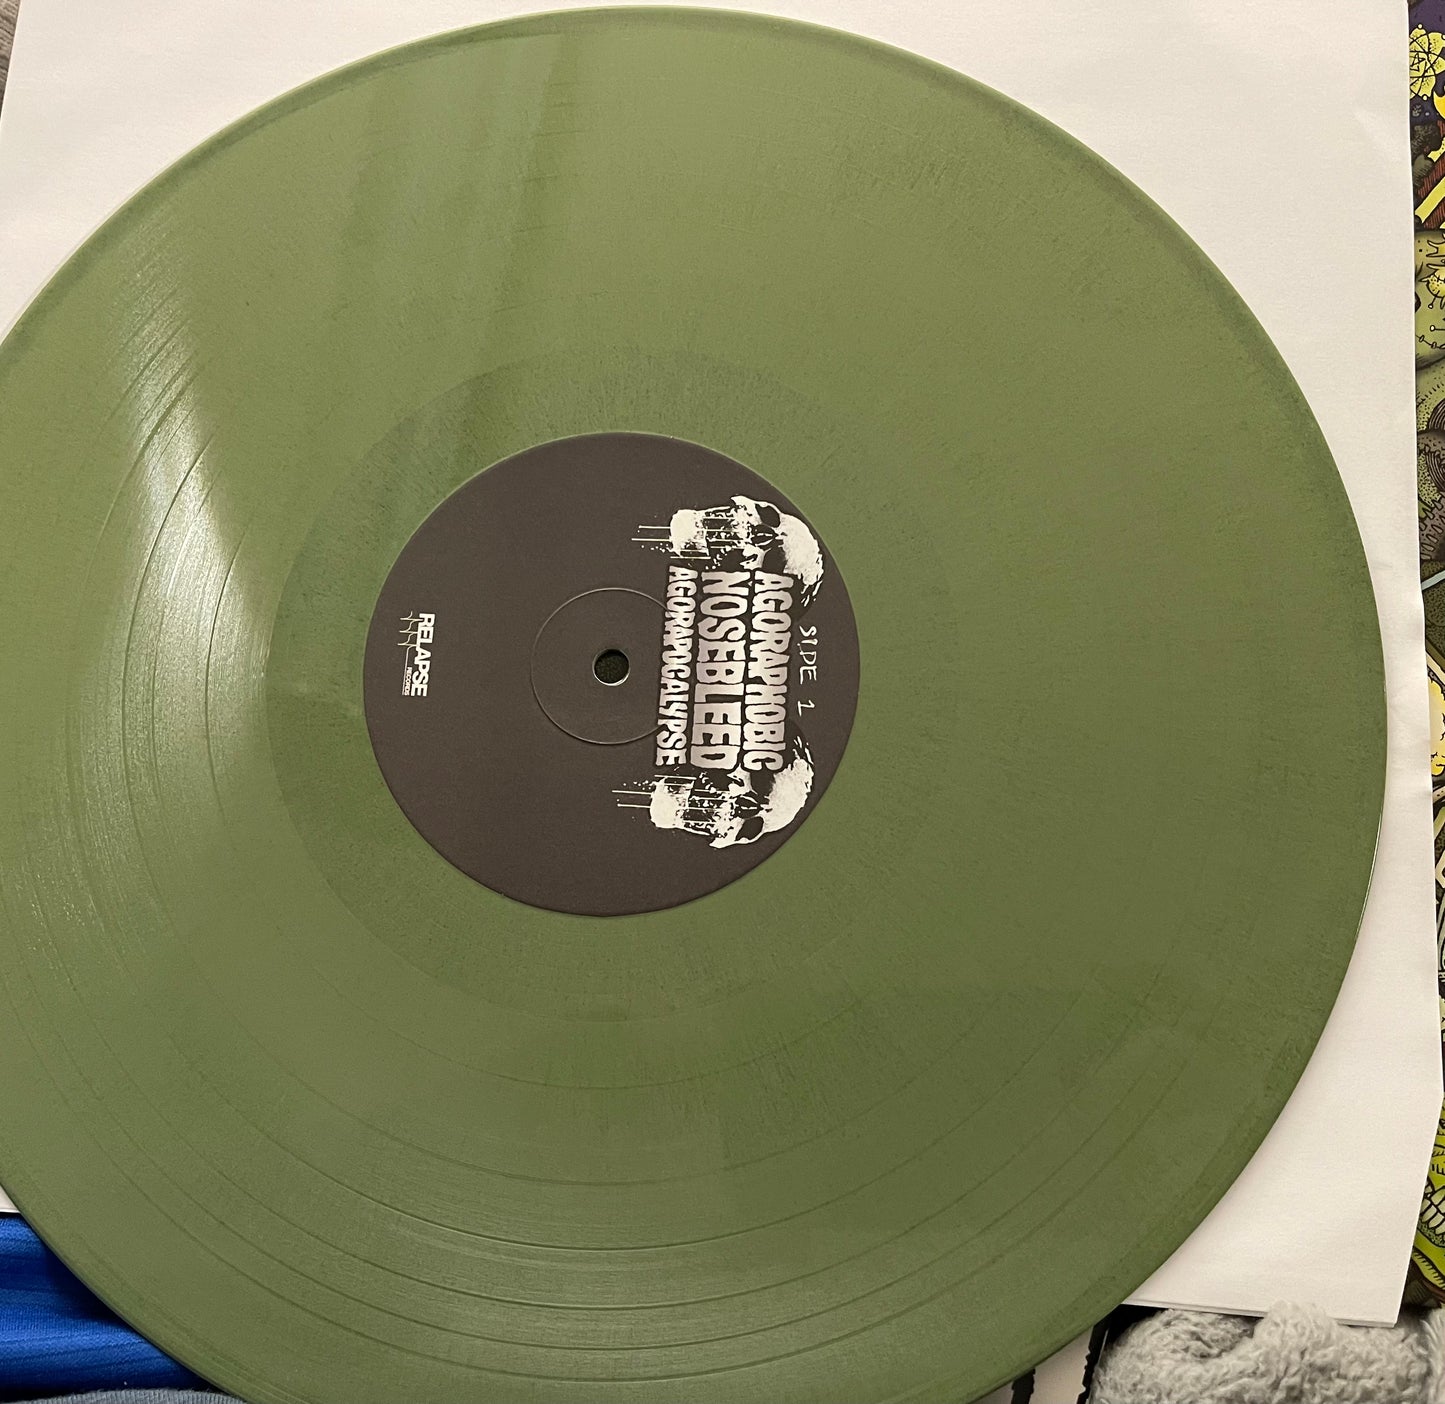 Agoraphobic Nosebleed - Agorapocalypse (Green Vinyl)